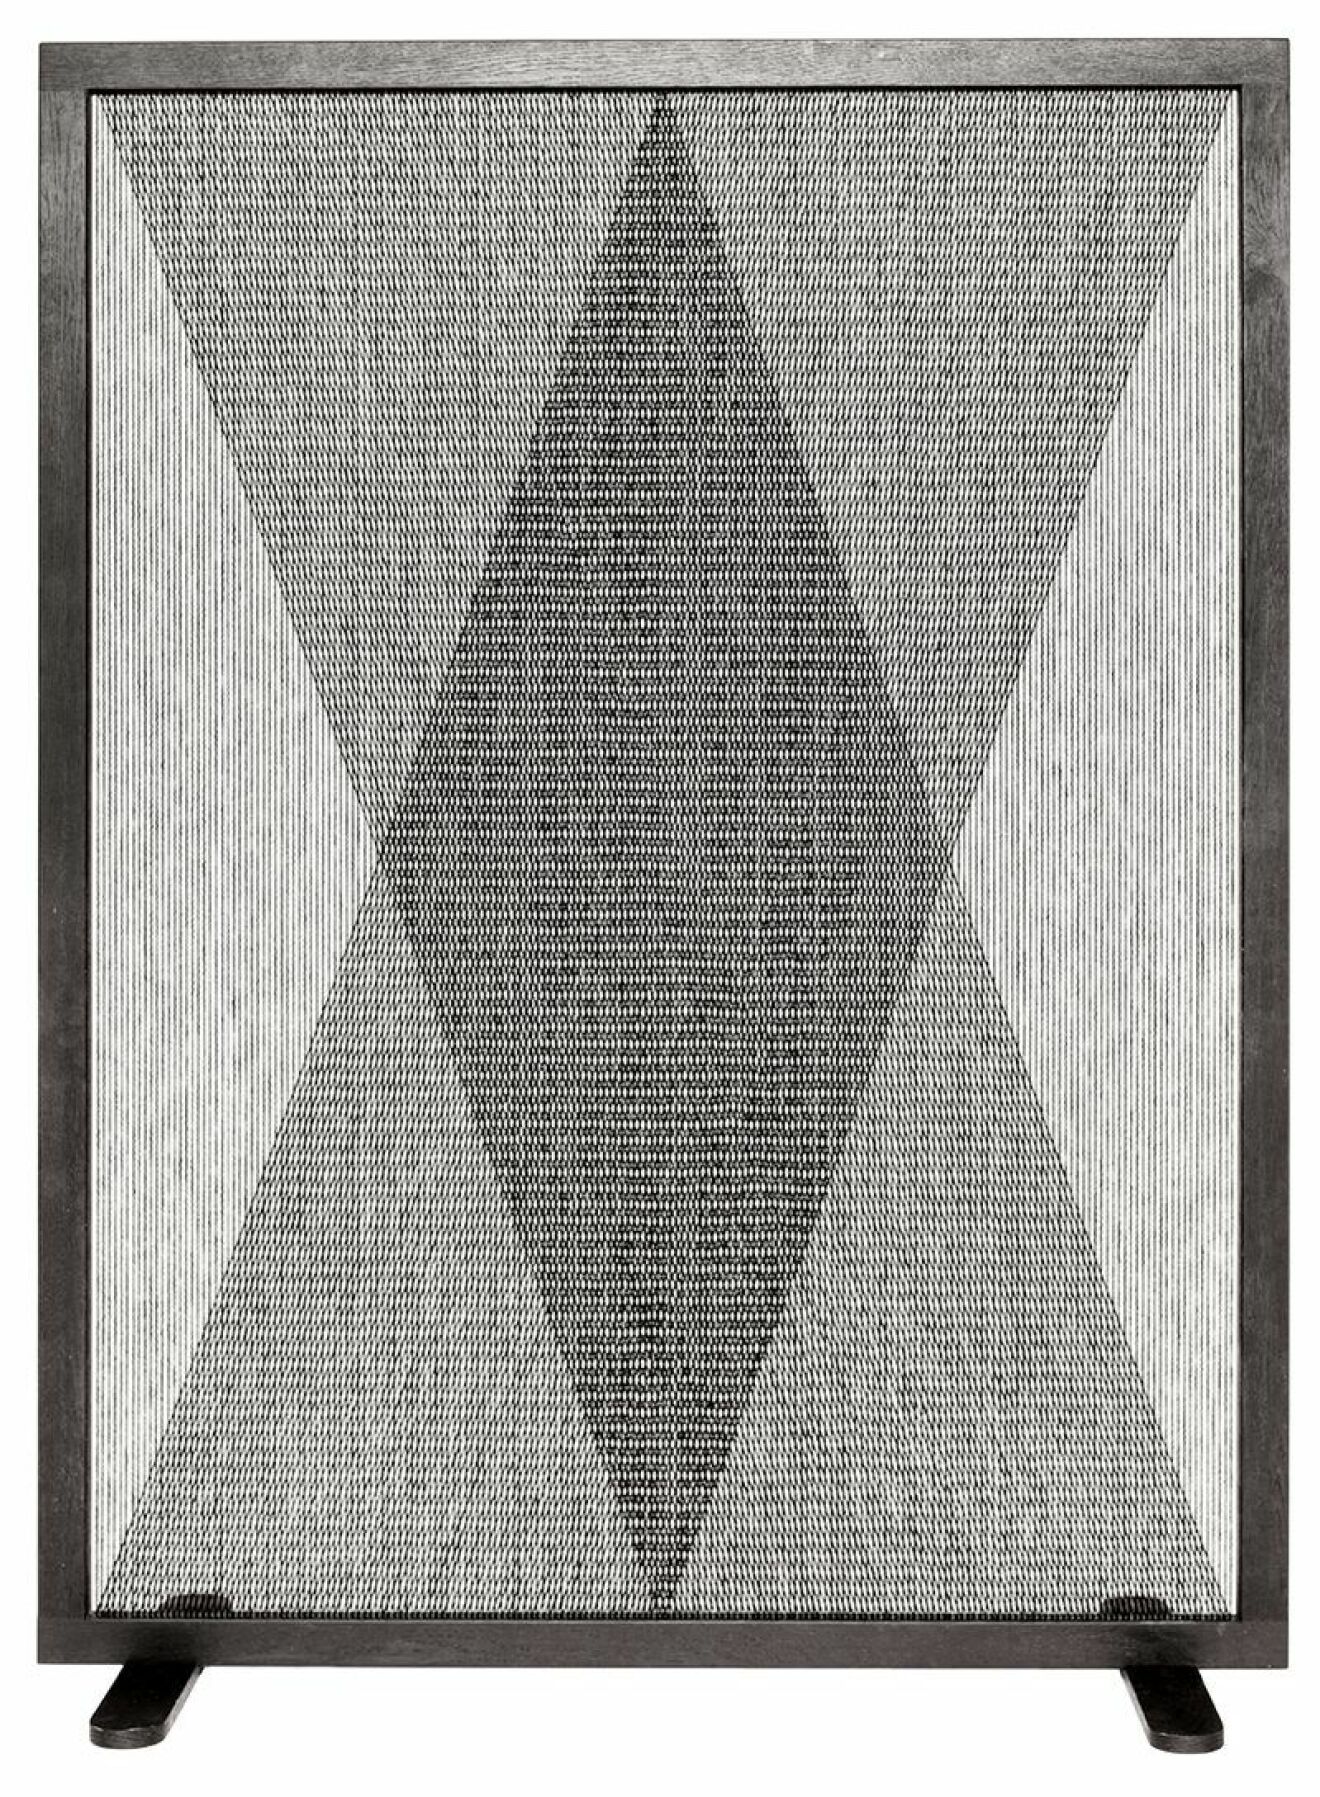 Vikvägg Net till­verkad av ullgarn görs på beställning, 8 000:-, Atelier Ryberg.